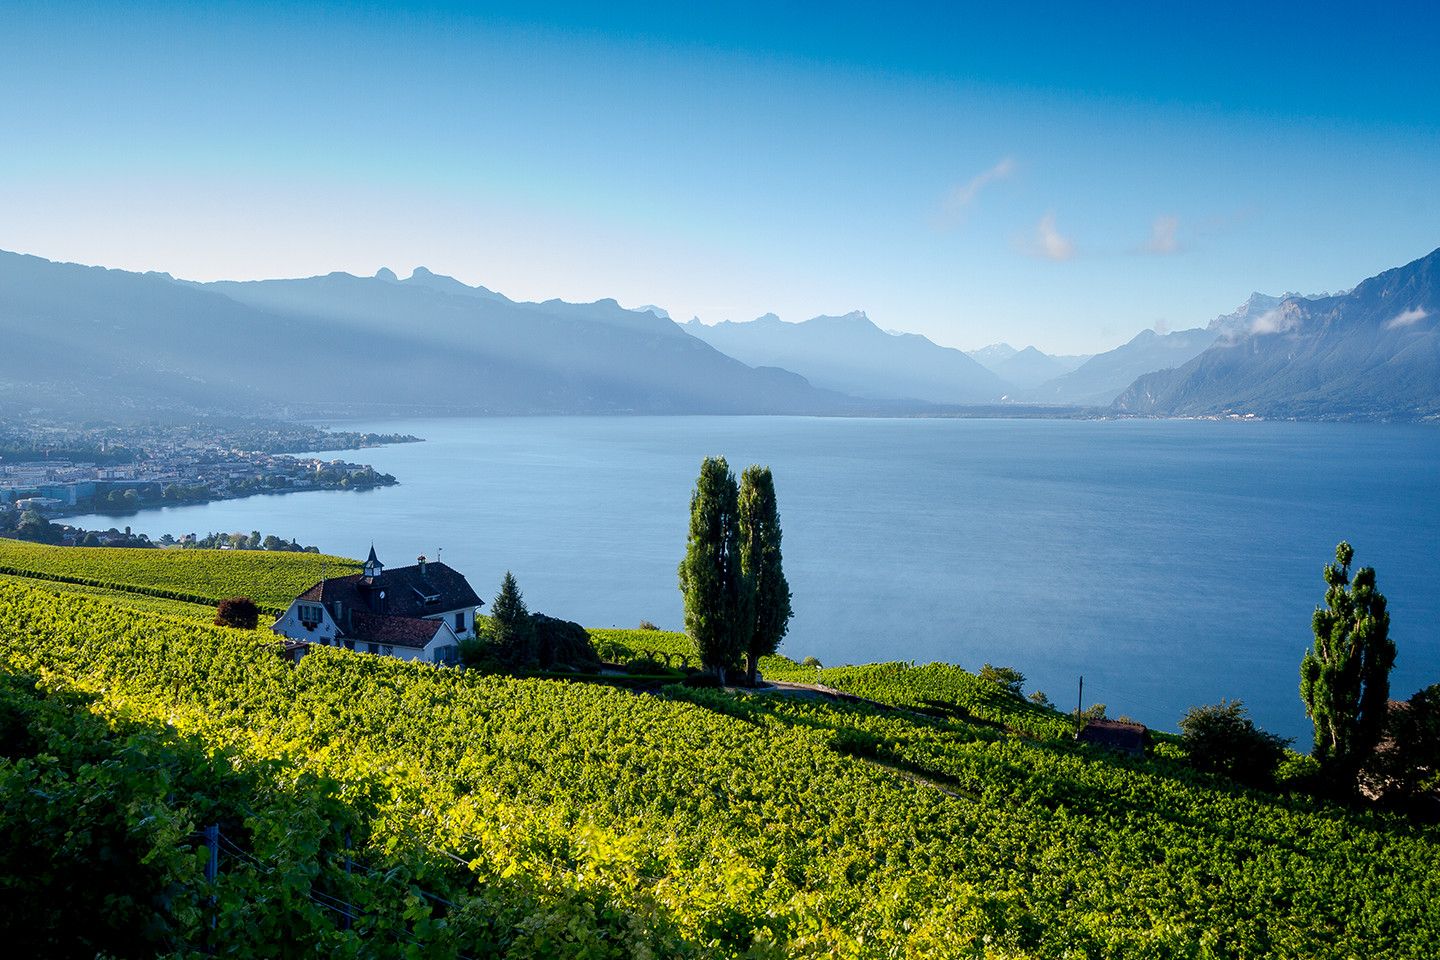 Canton de Vaud, Suisse : lacs, montagnes, vins, et EHL